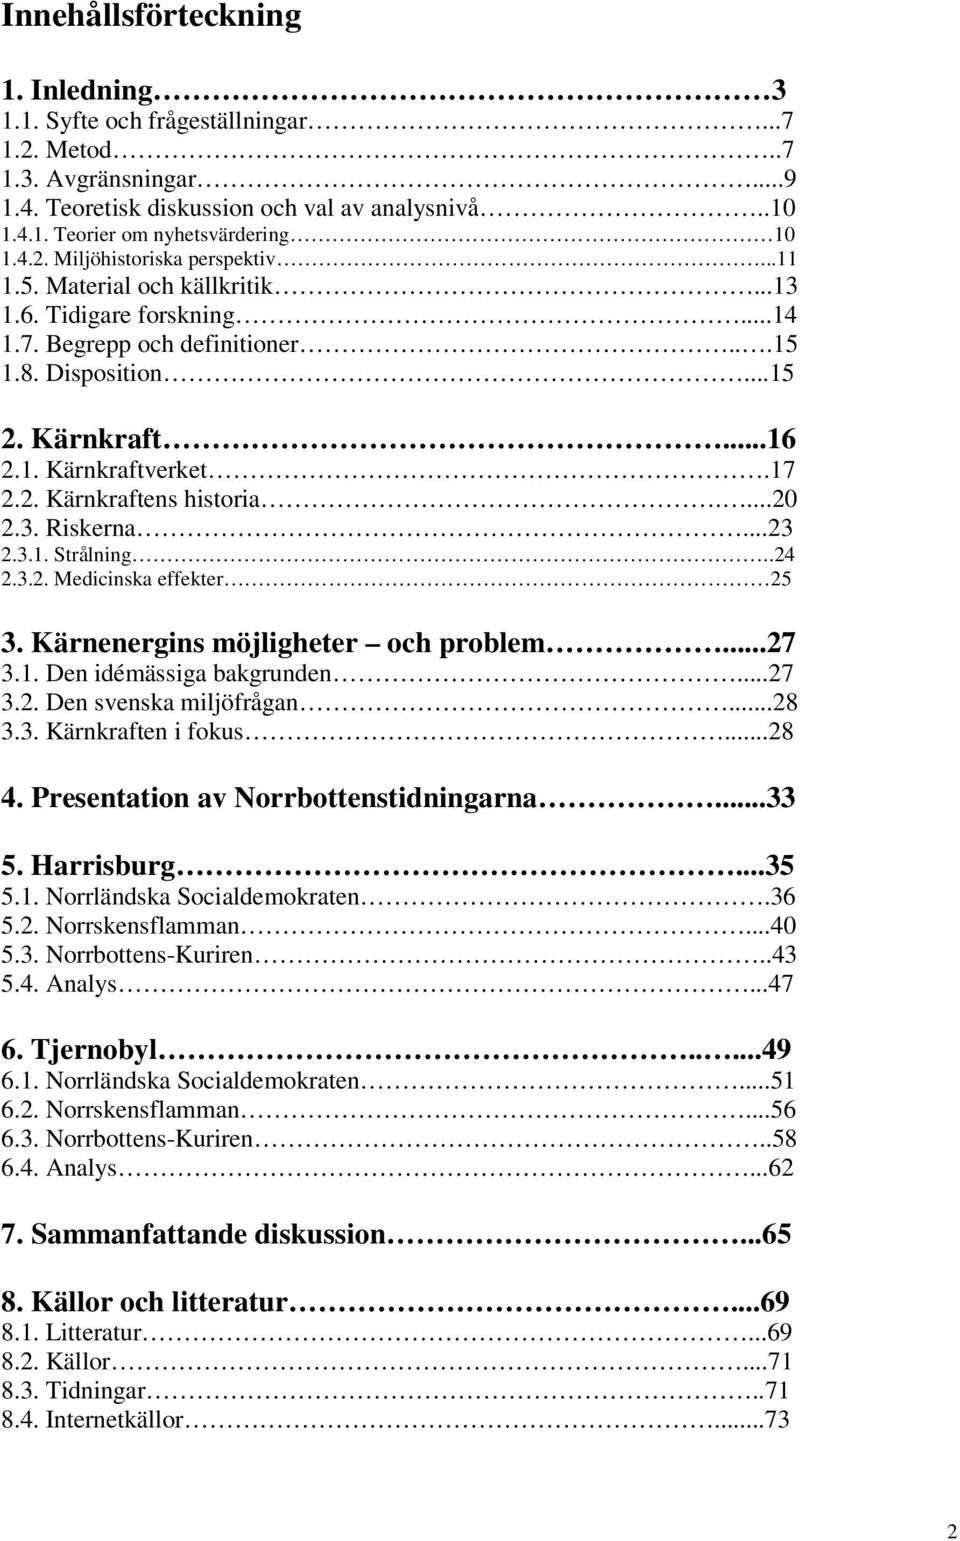 17 2.2. Kärnkraftens historia....20 2.3. Riskerna...23 2.3.1. Strålning..24 2.3.2. Medicinska effekter 25 3. Kärnenergins möjligheter och problem...27 3.1. Den idémässiga bakgrunden...27 3.2. Den svenska miljöfrågan.